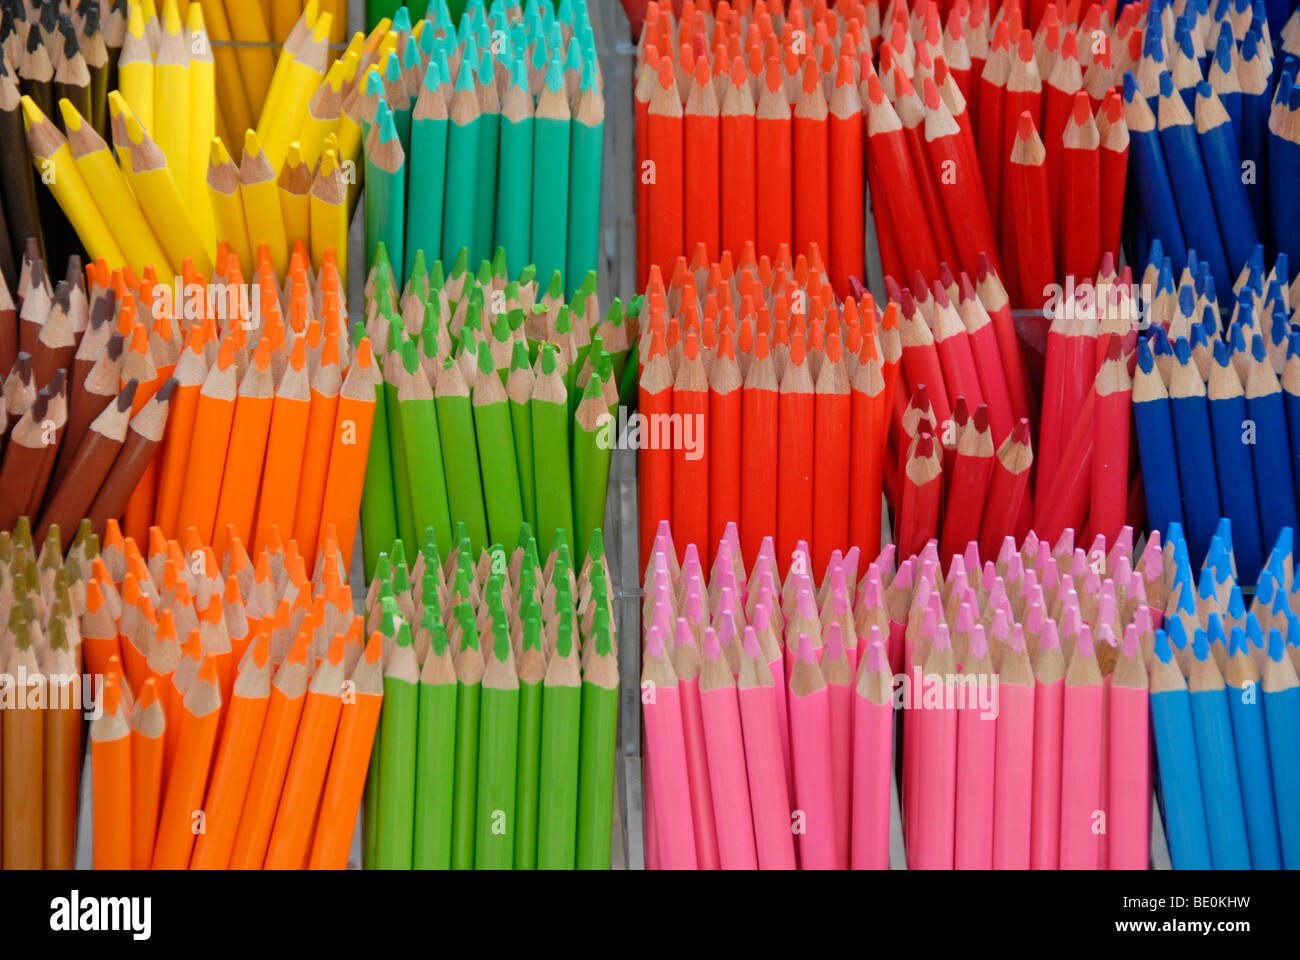 Assortiment de crayons de couleurs, différentes couleurs Banque D'Images